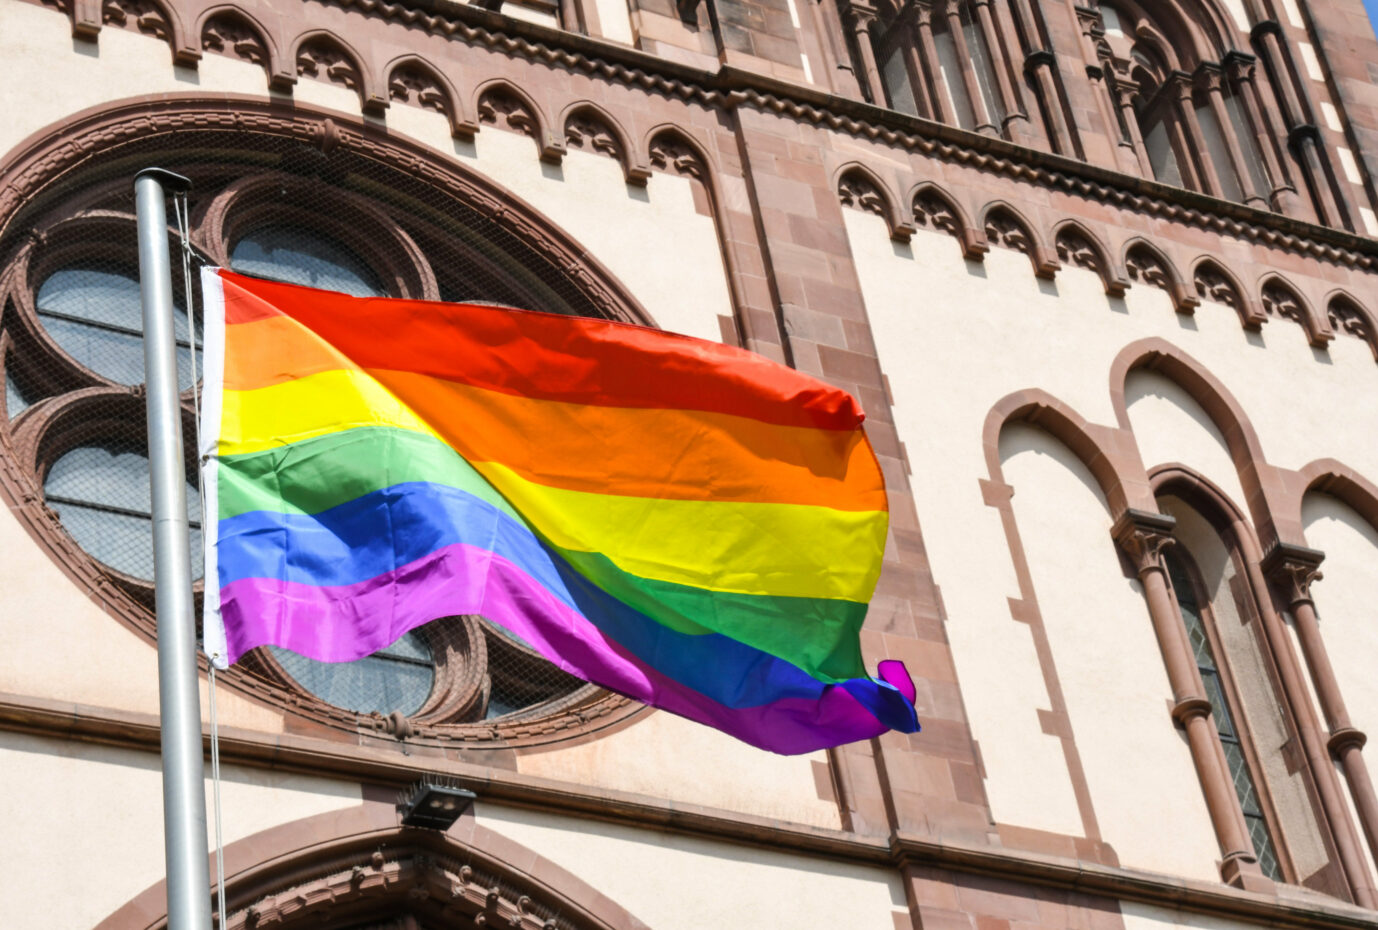 Regenbogenfahne vor Kirche: Die Katholische junge Gemeinde gendert "Gott*" (Symbolbild) Foto: picture alliance / Winfried Rothermel | Winfried Rothermel